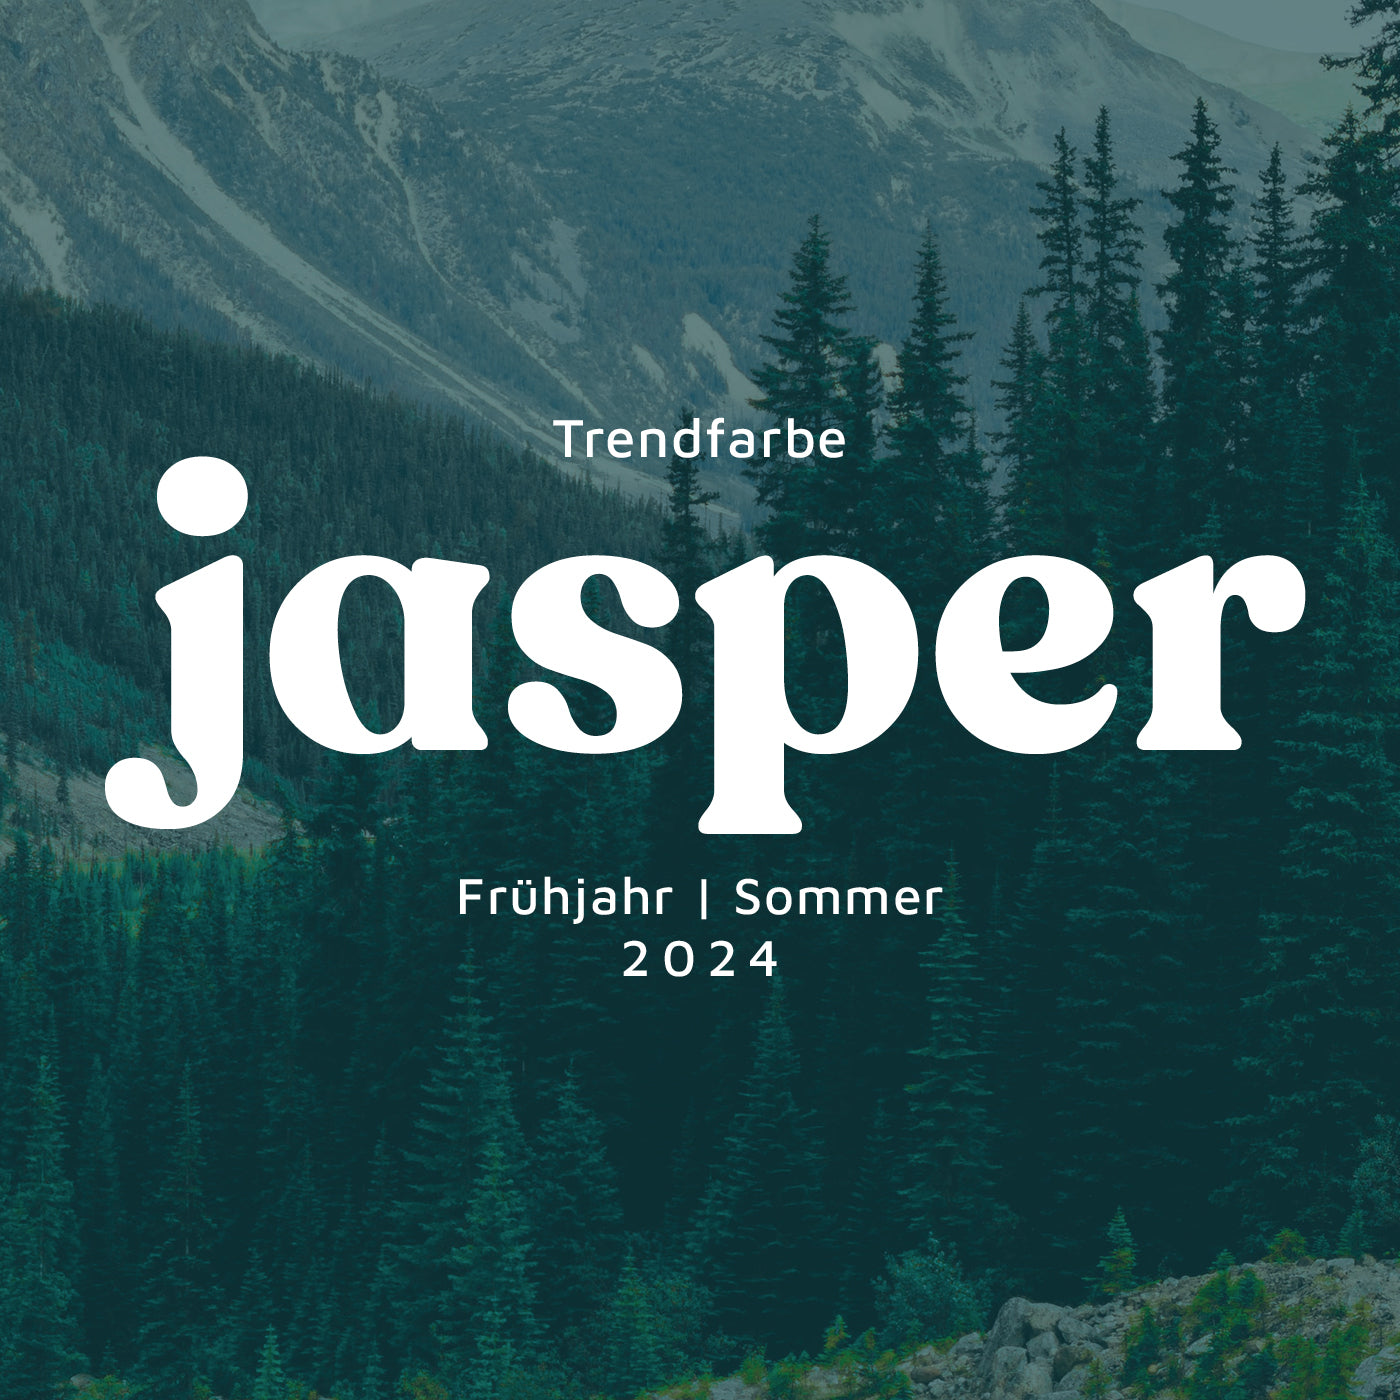 Die natürliche Schönheit der Trendfarbe Jasper Grün 🌲